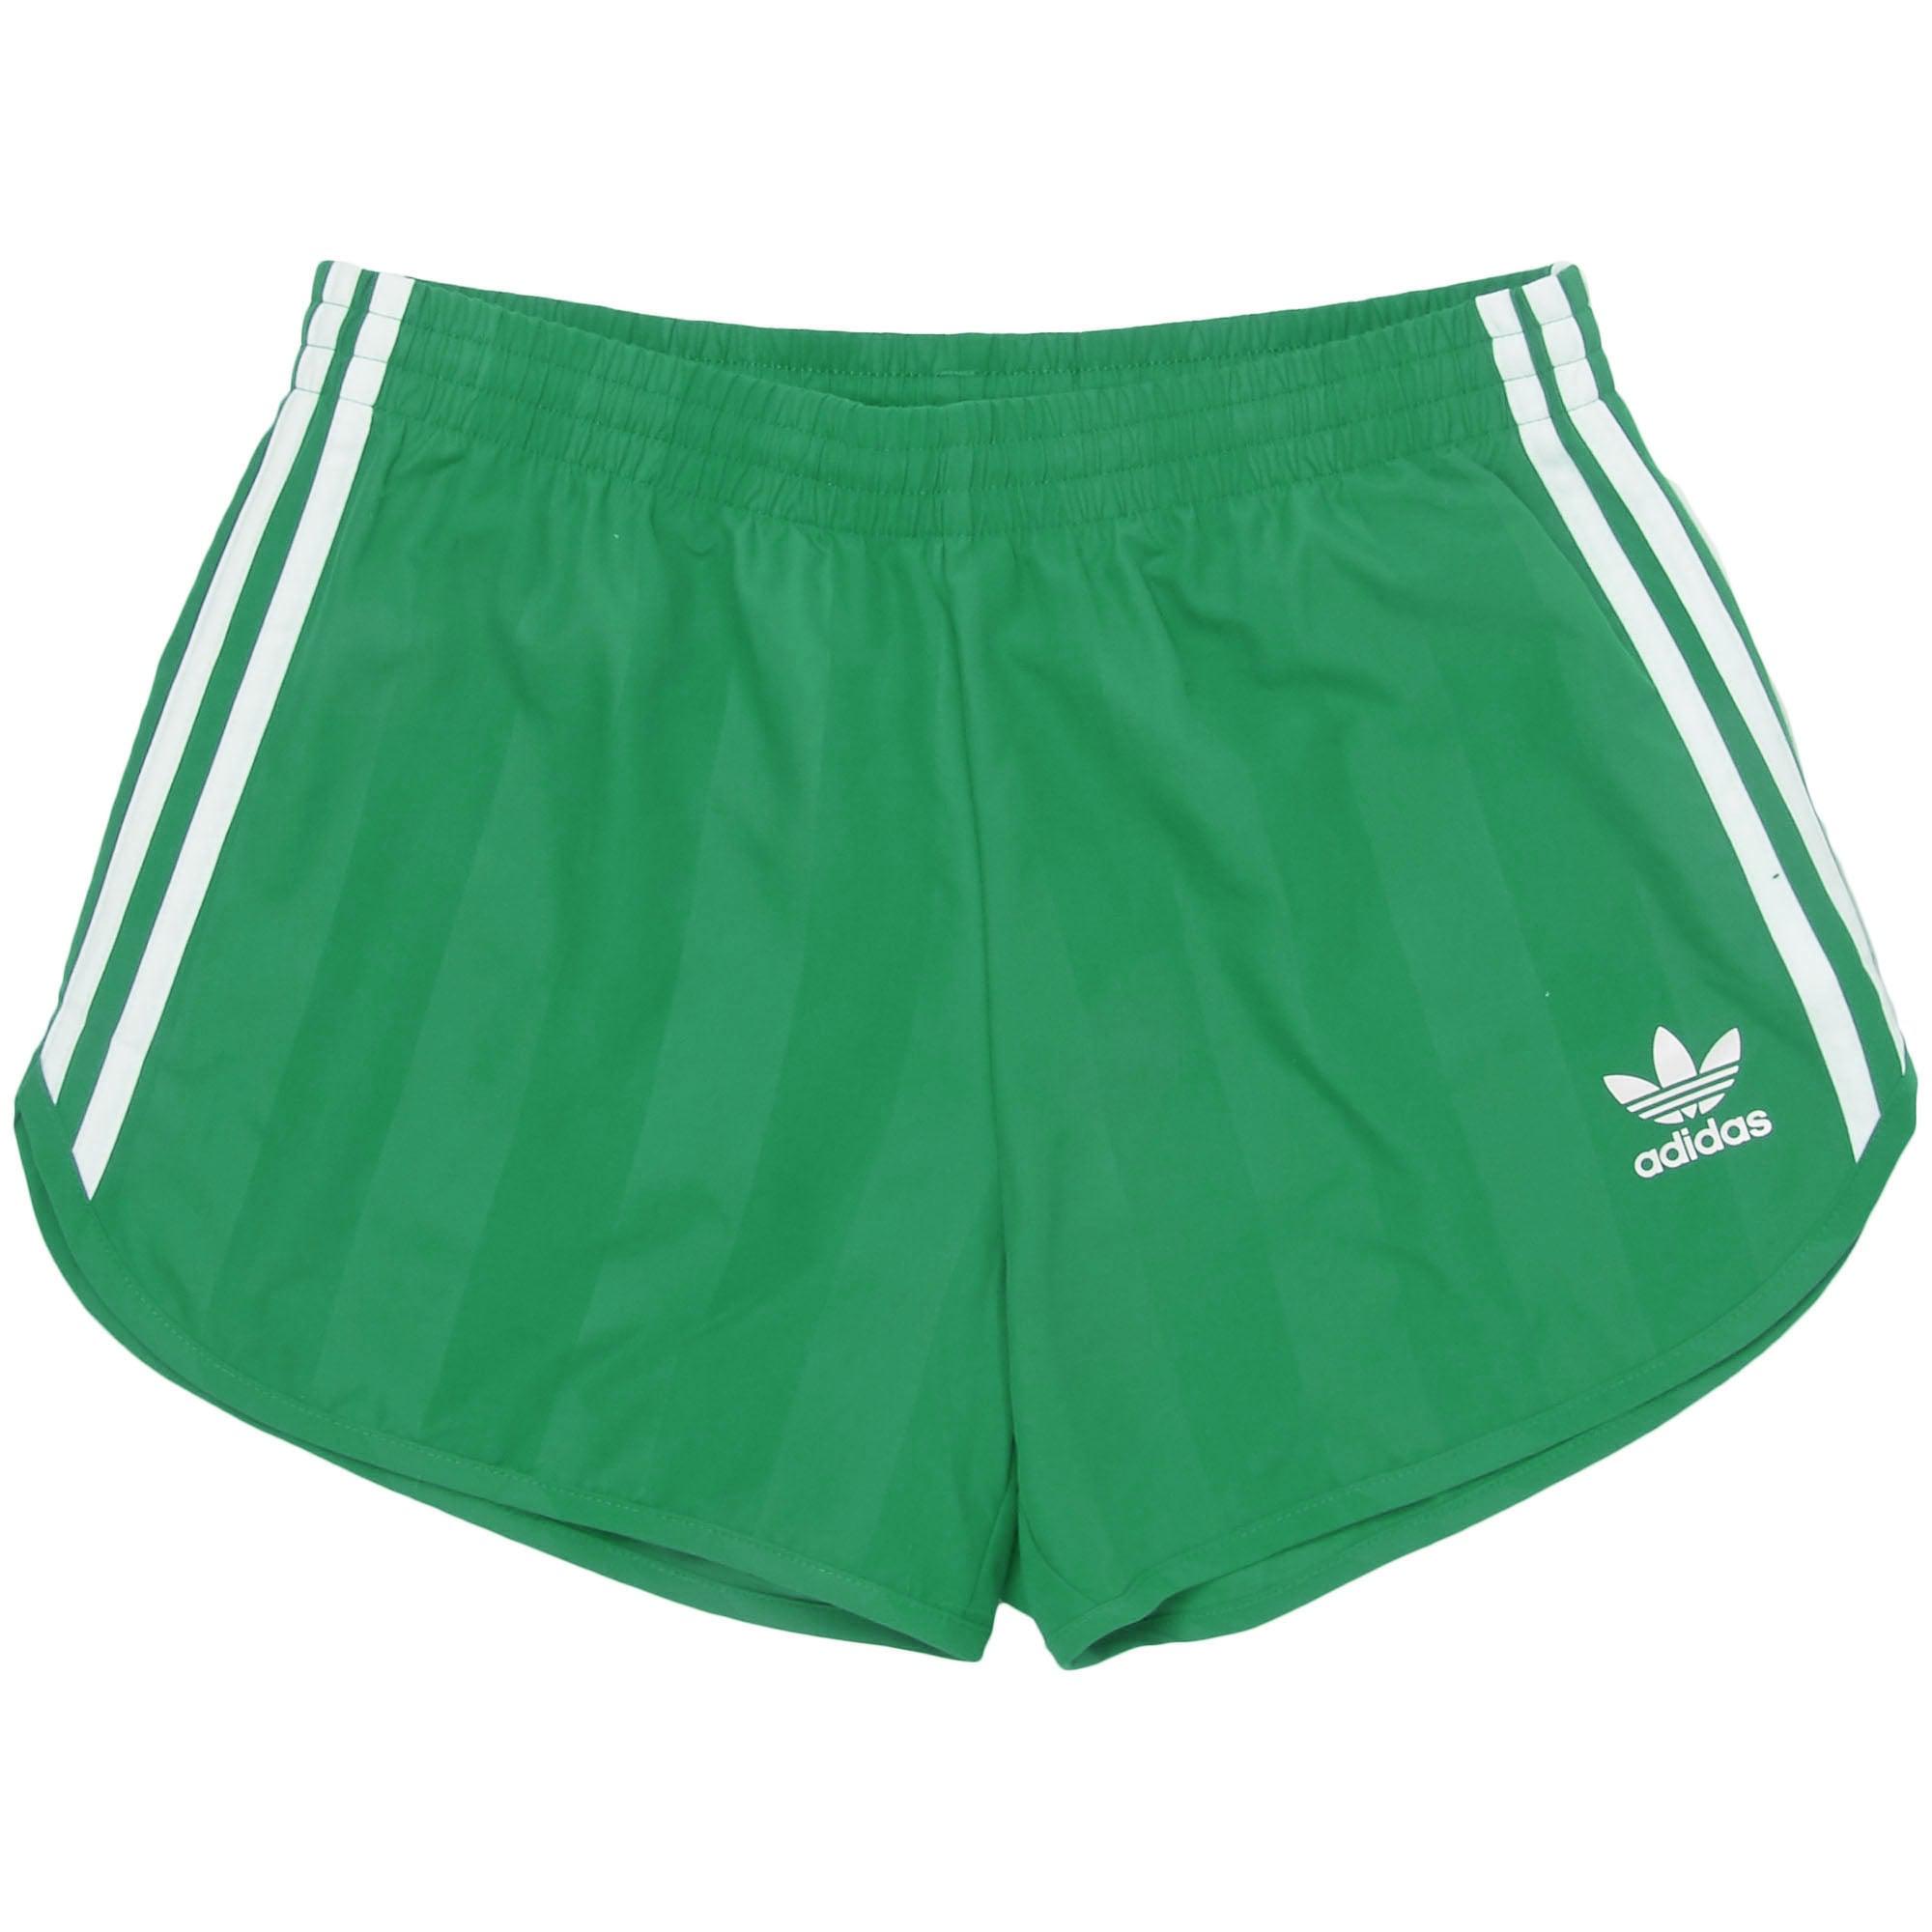 Adidas Green Swim Shorts Deals, SAVE 33% - primera-ap.com